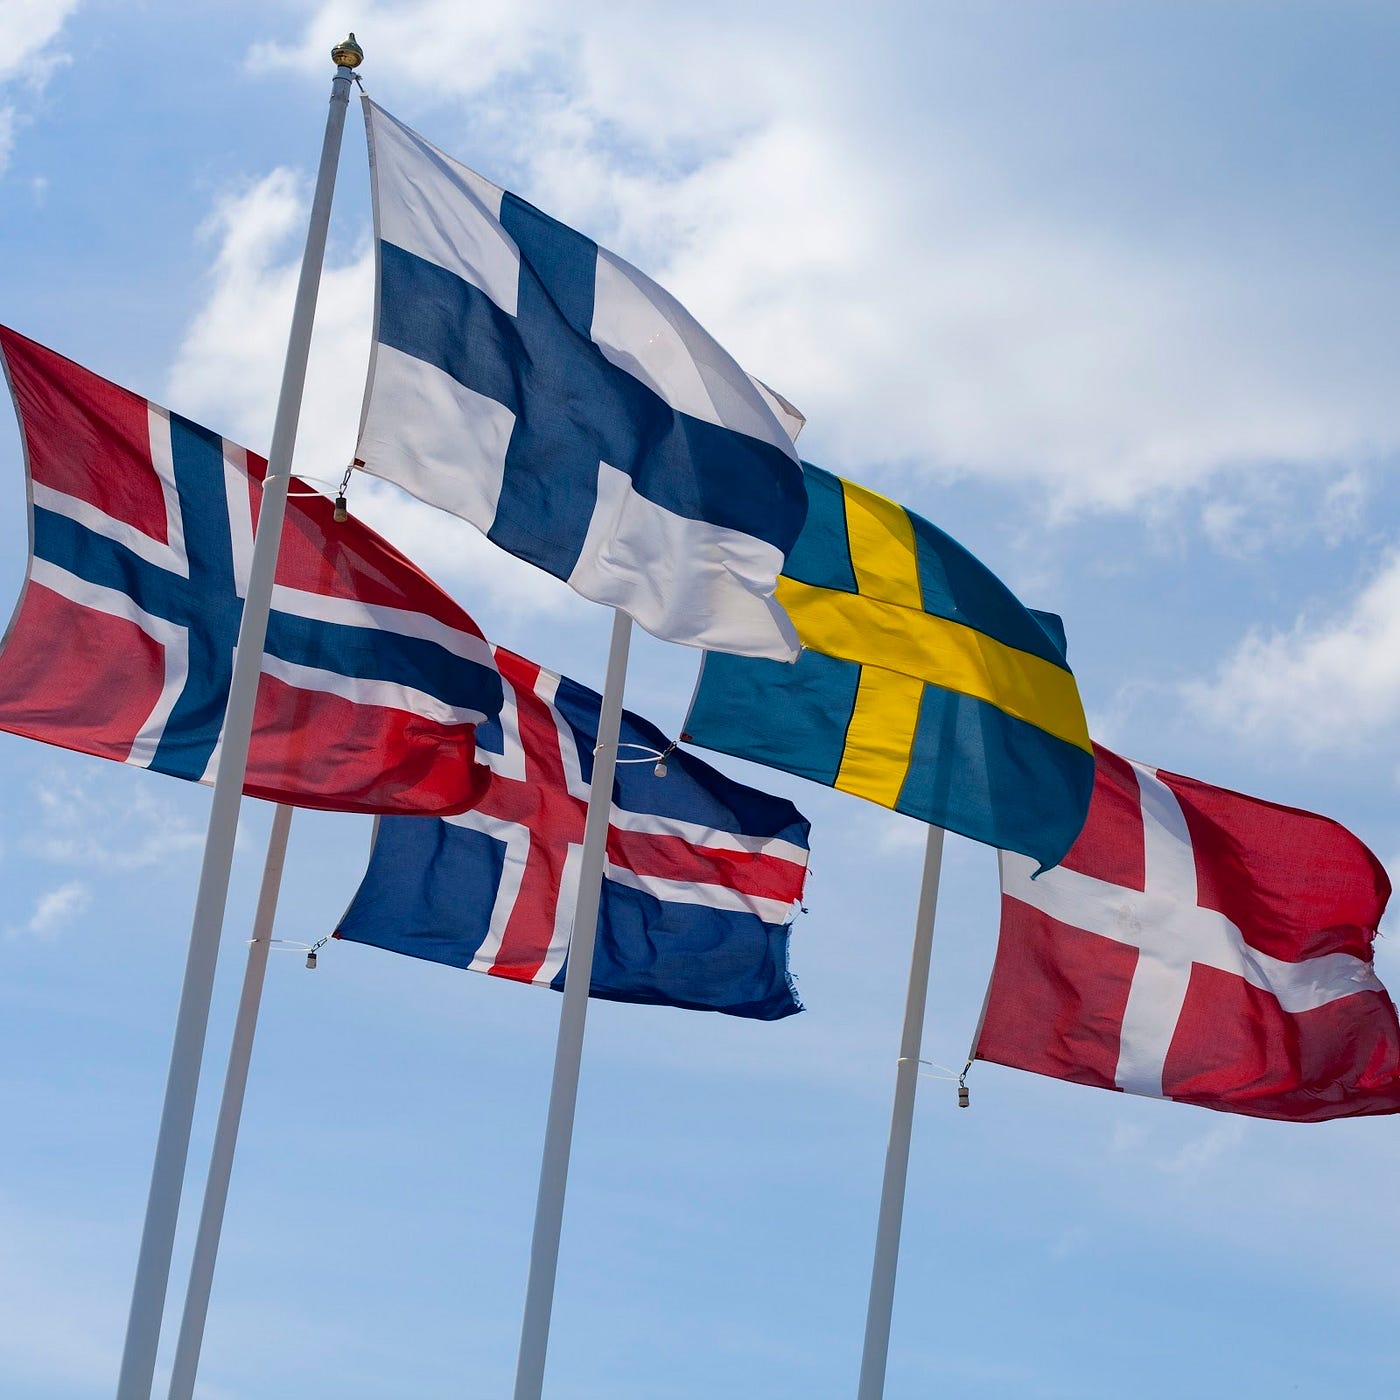 Escandinávia e países nórdicos: arte, cultura, política e